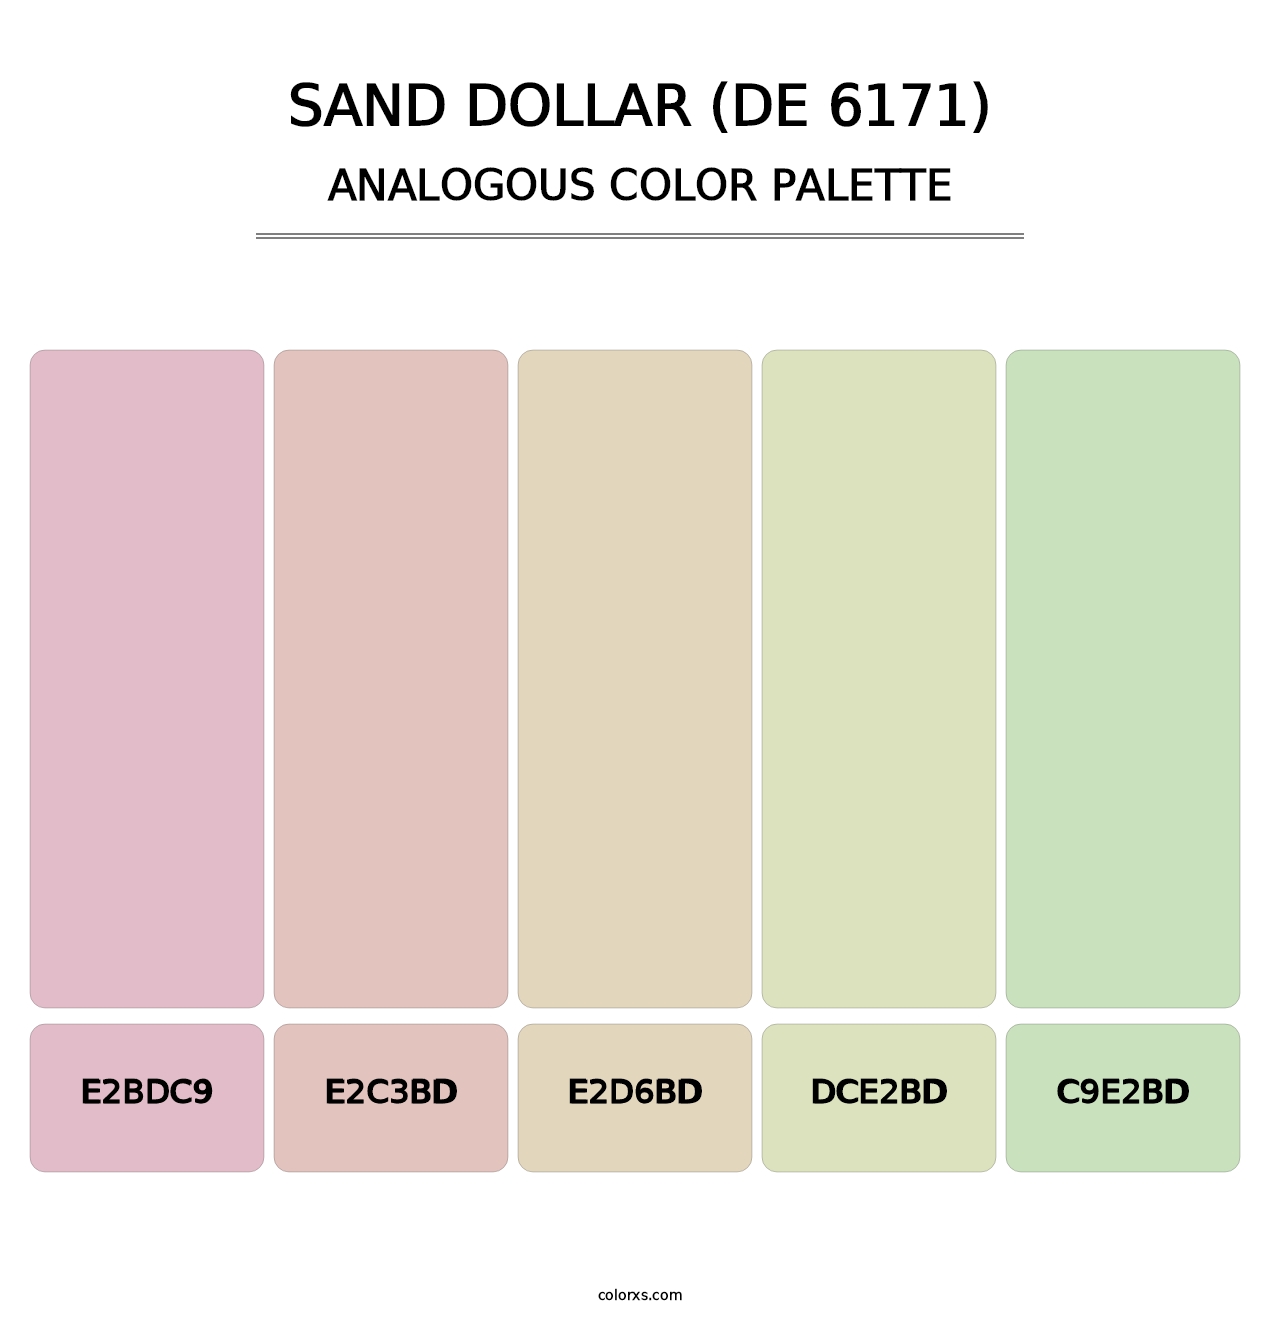 Sand Dollar (DE 6171) - Analogous Color Palette